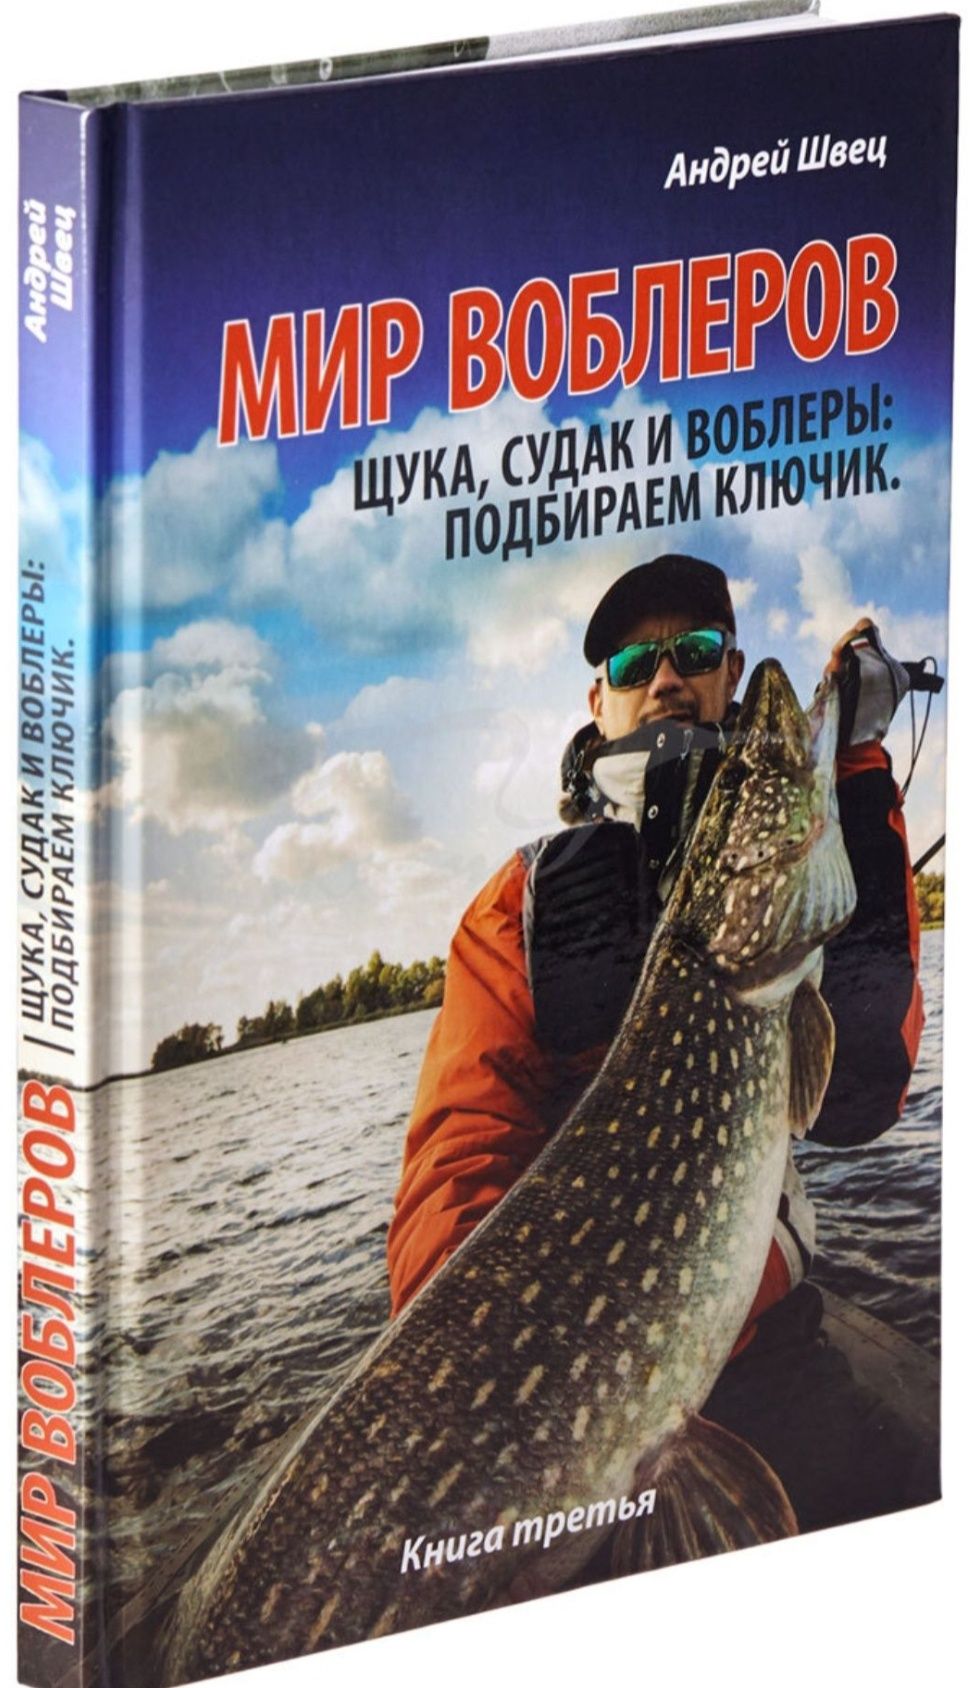 Книга "Мир воблеров"для любителей рыбалки